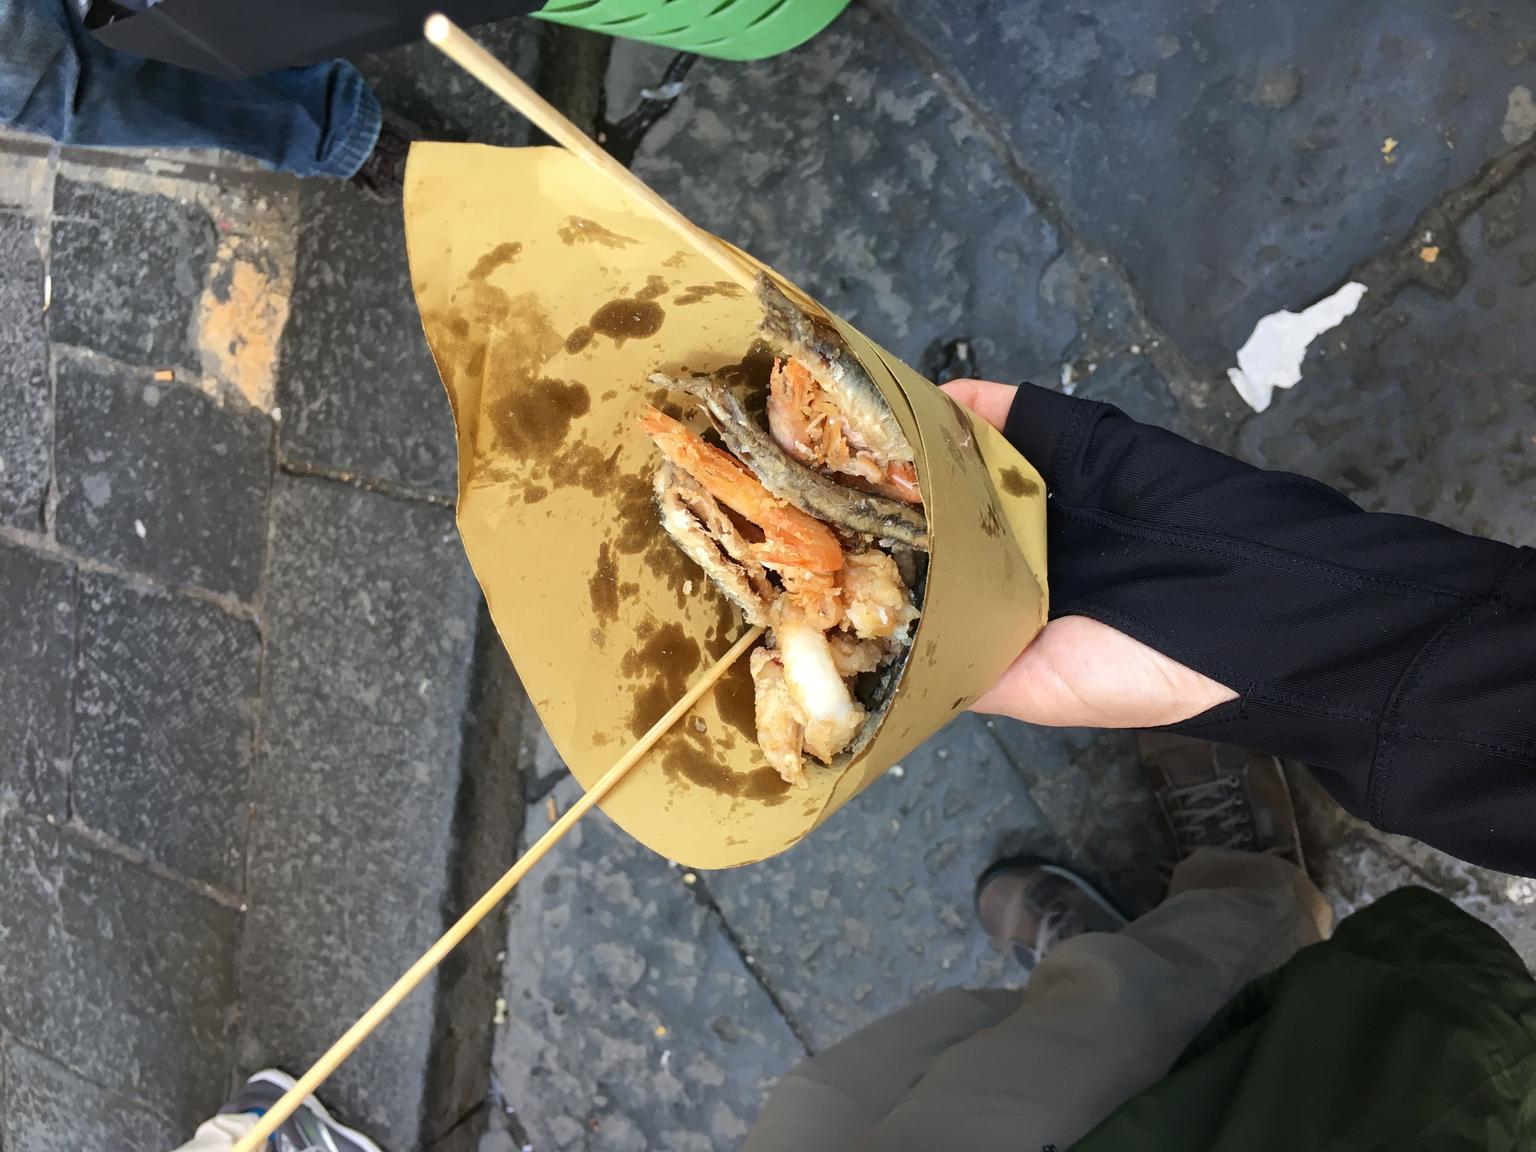 Street food in Naples